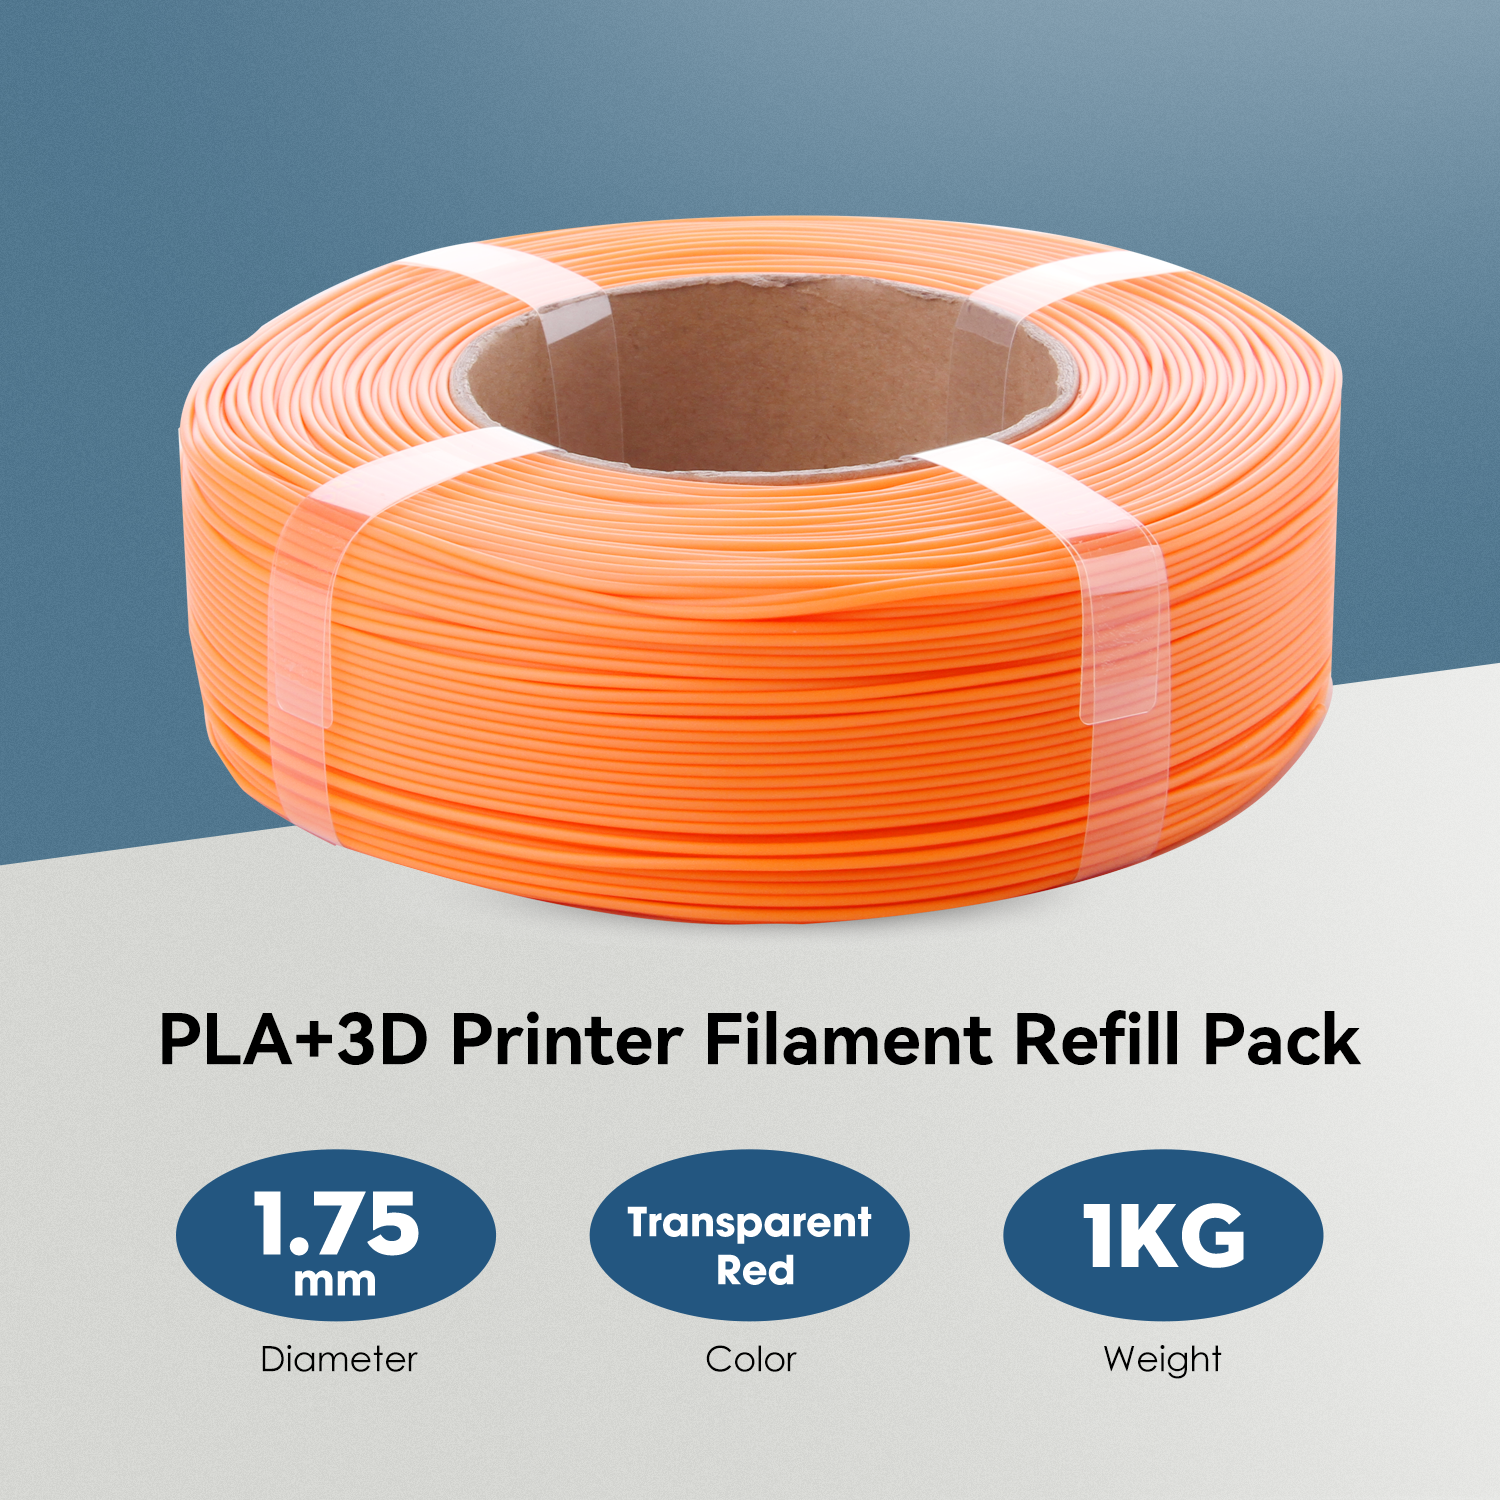 eSUN PLA+ Filament 1.75mm 1kg (2.2lb) – INTSERVO 3D Printing Store